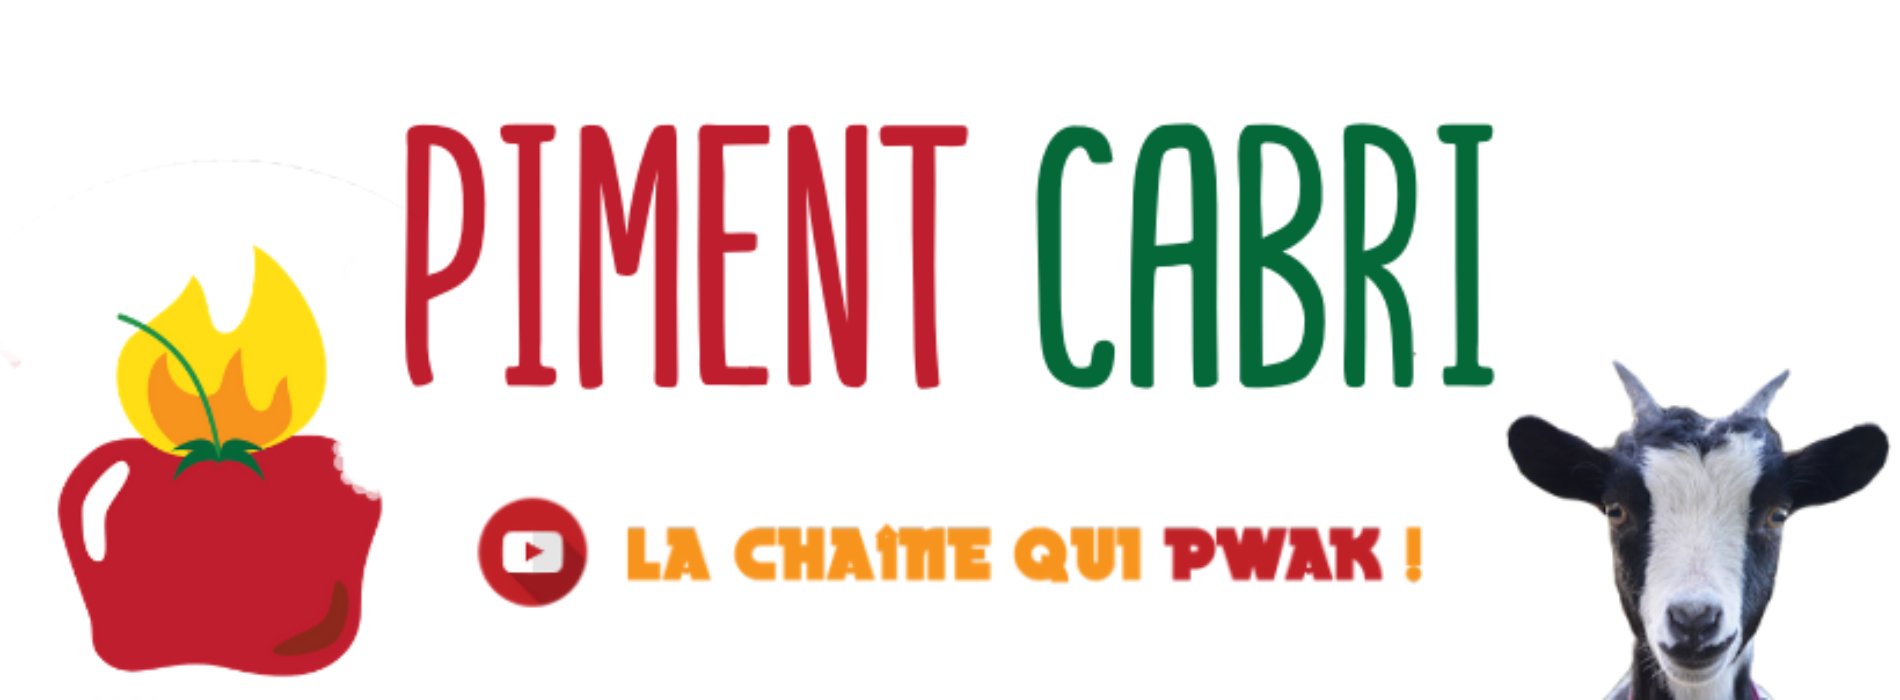 Découvre la chaîne Piment Cabri sur YouTube, d’info-divertissement 100% réunionnaise ! Interviews, reportages, sketchs… Piment Cabri, la chaîne qui pouak ! – Janvier 2020